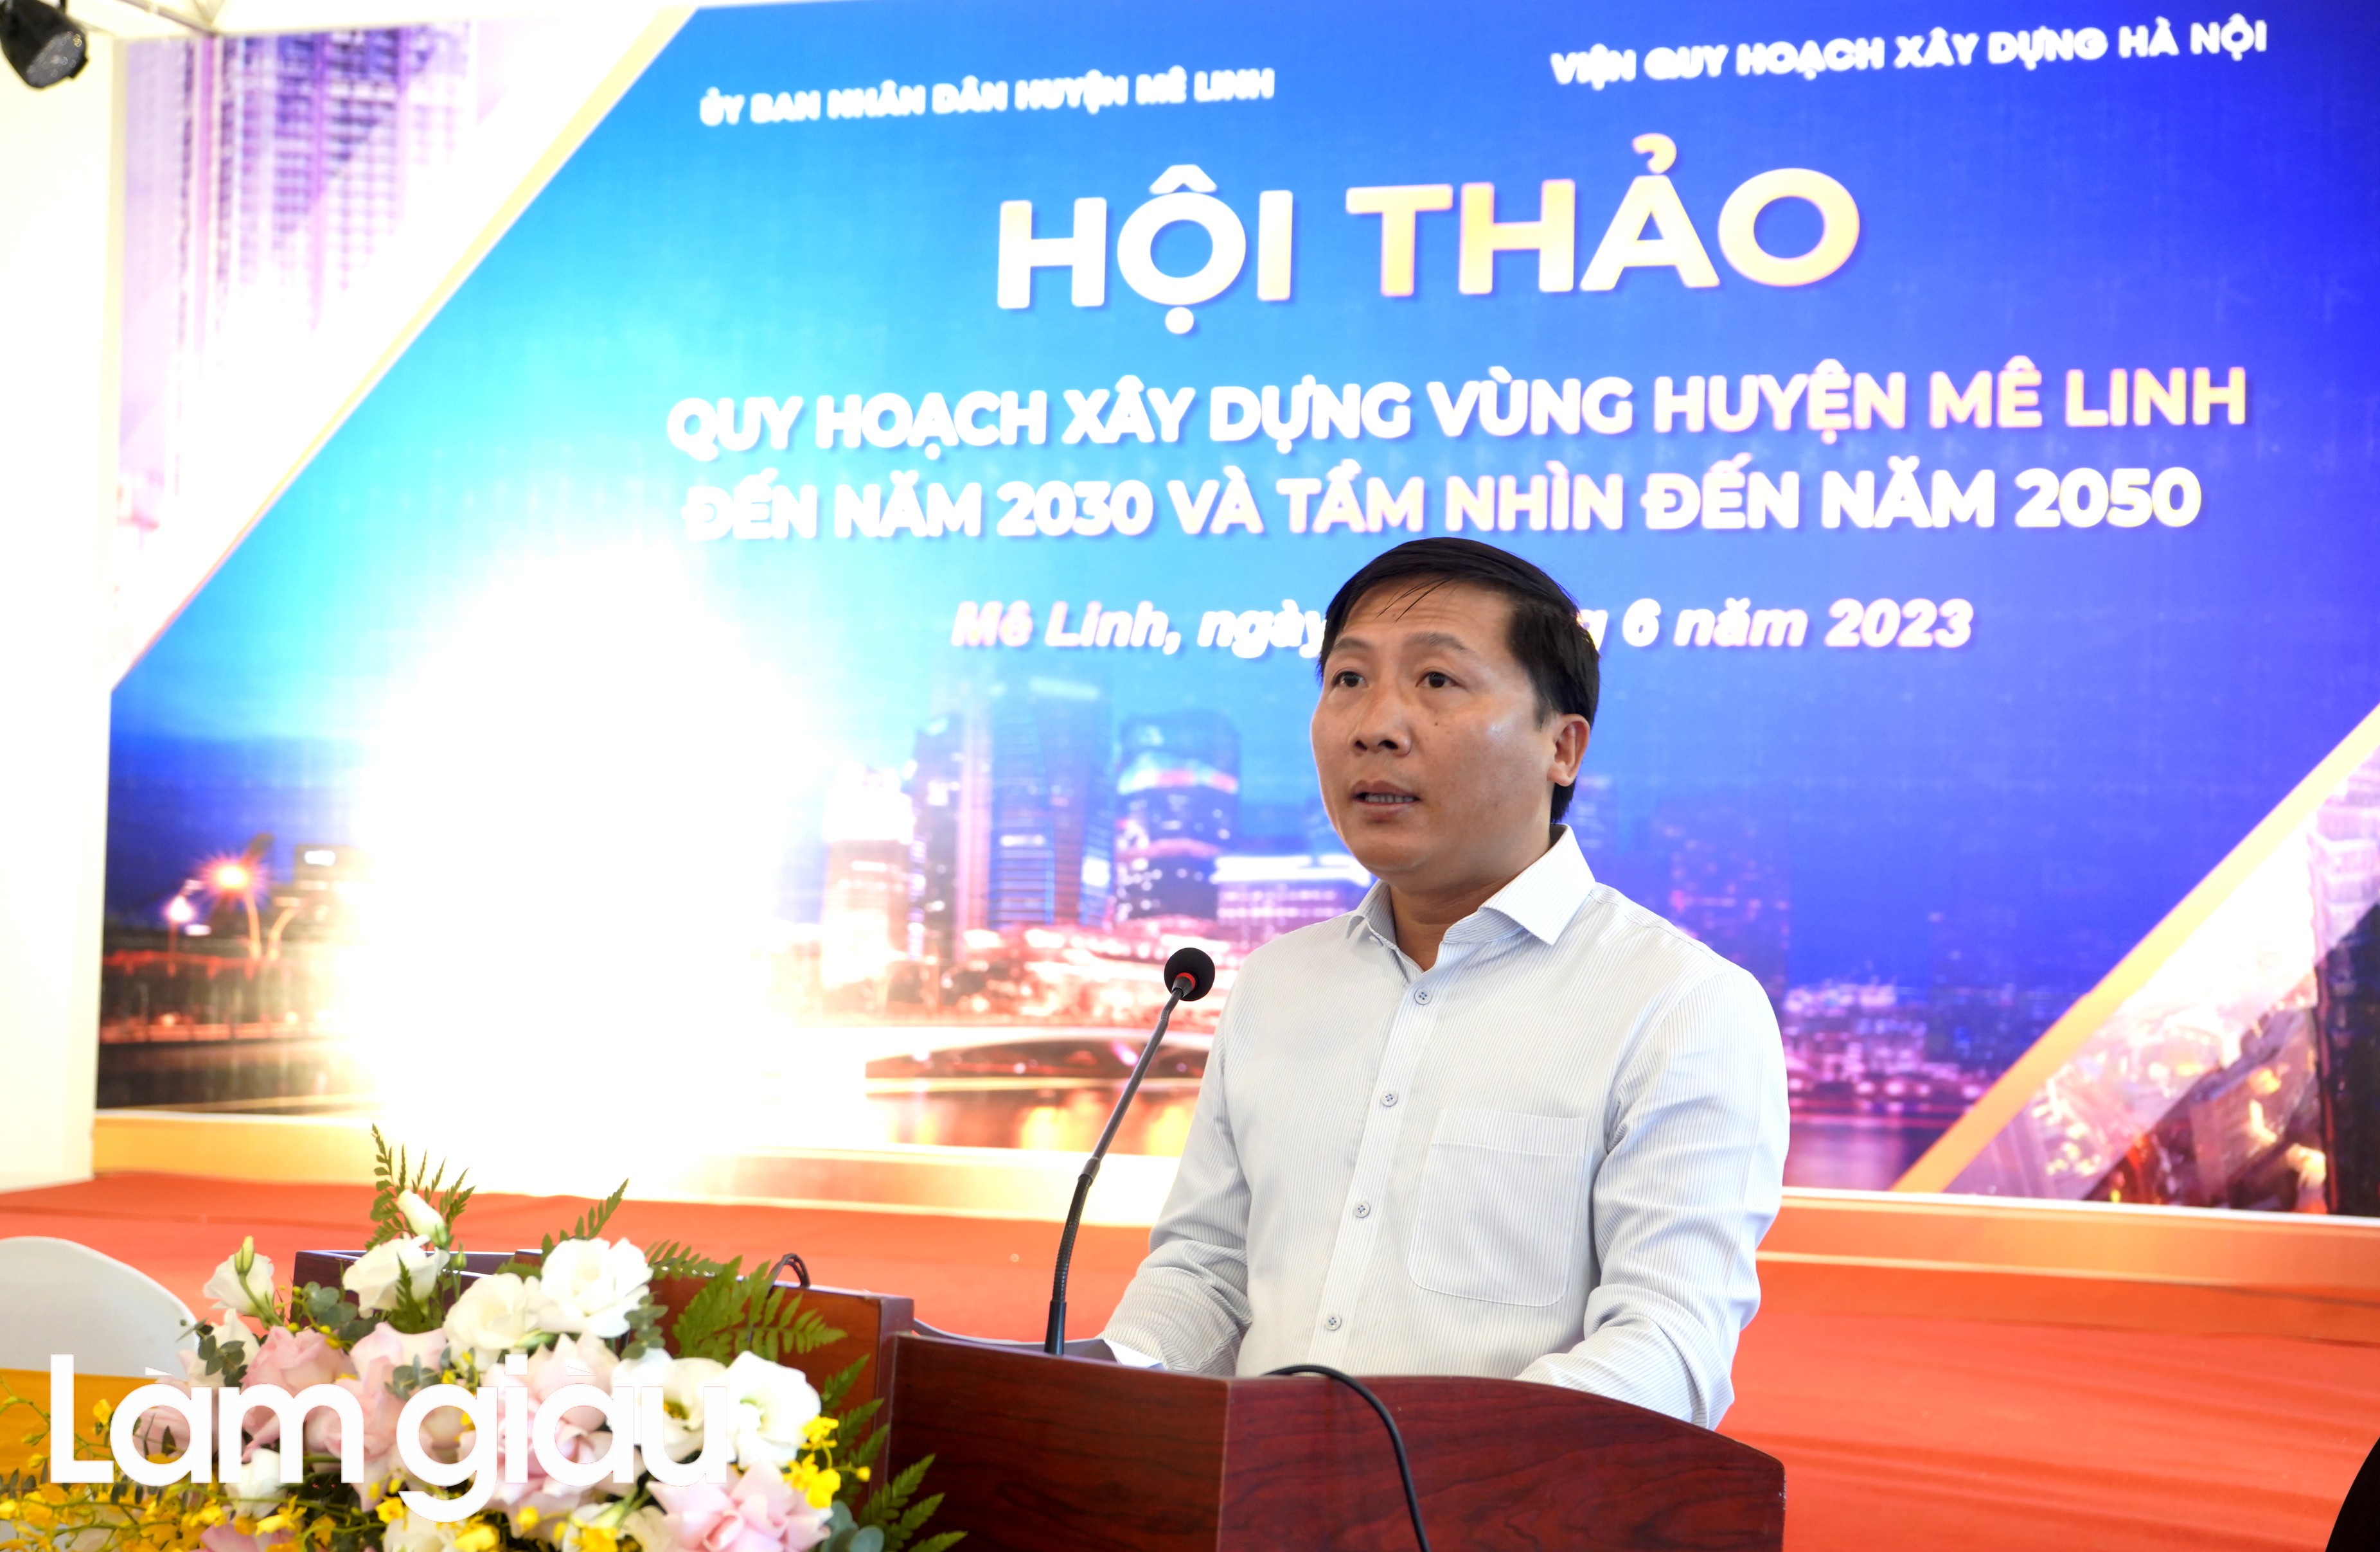 Huyện Mê Linh tổ chức hội thảo lấy ý kiến về Quy hoạch xây dựng vùng